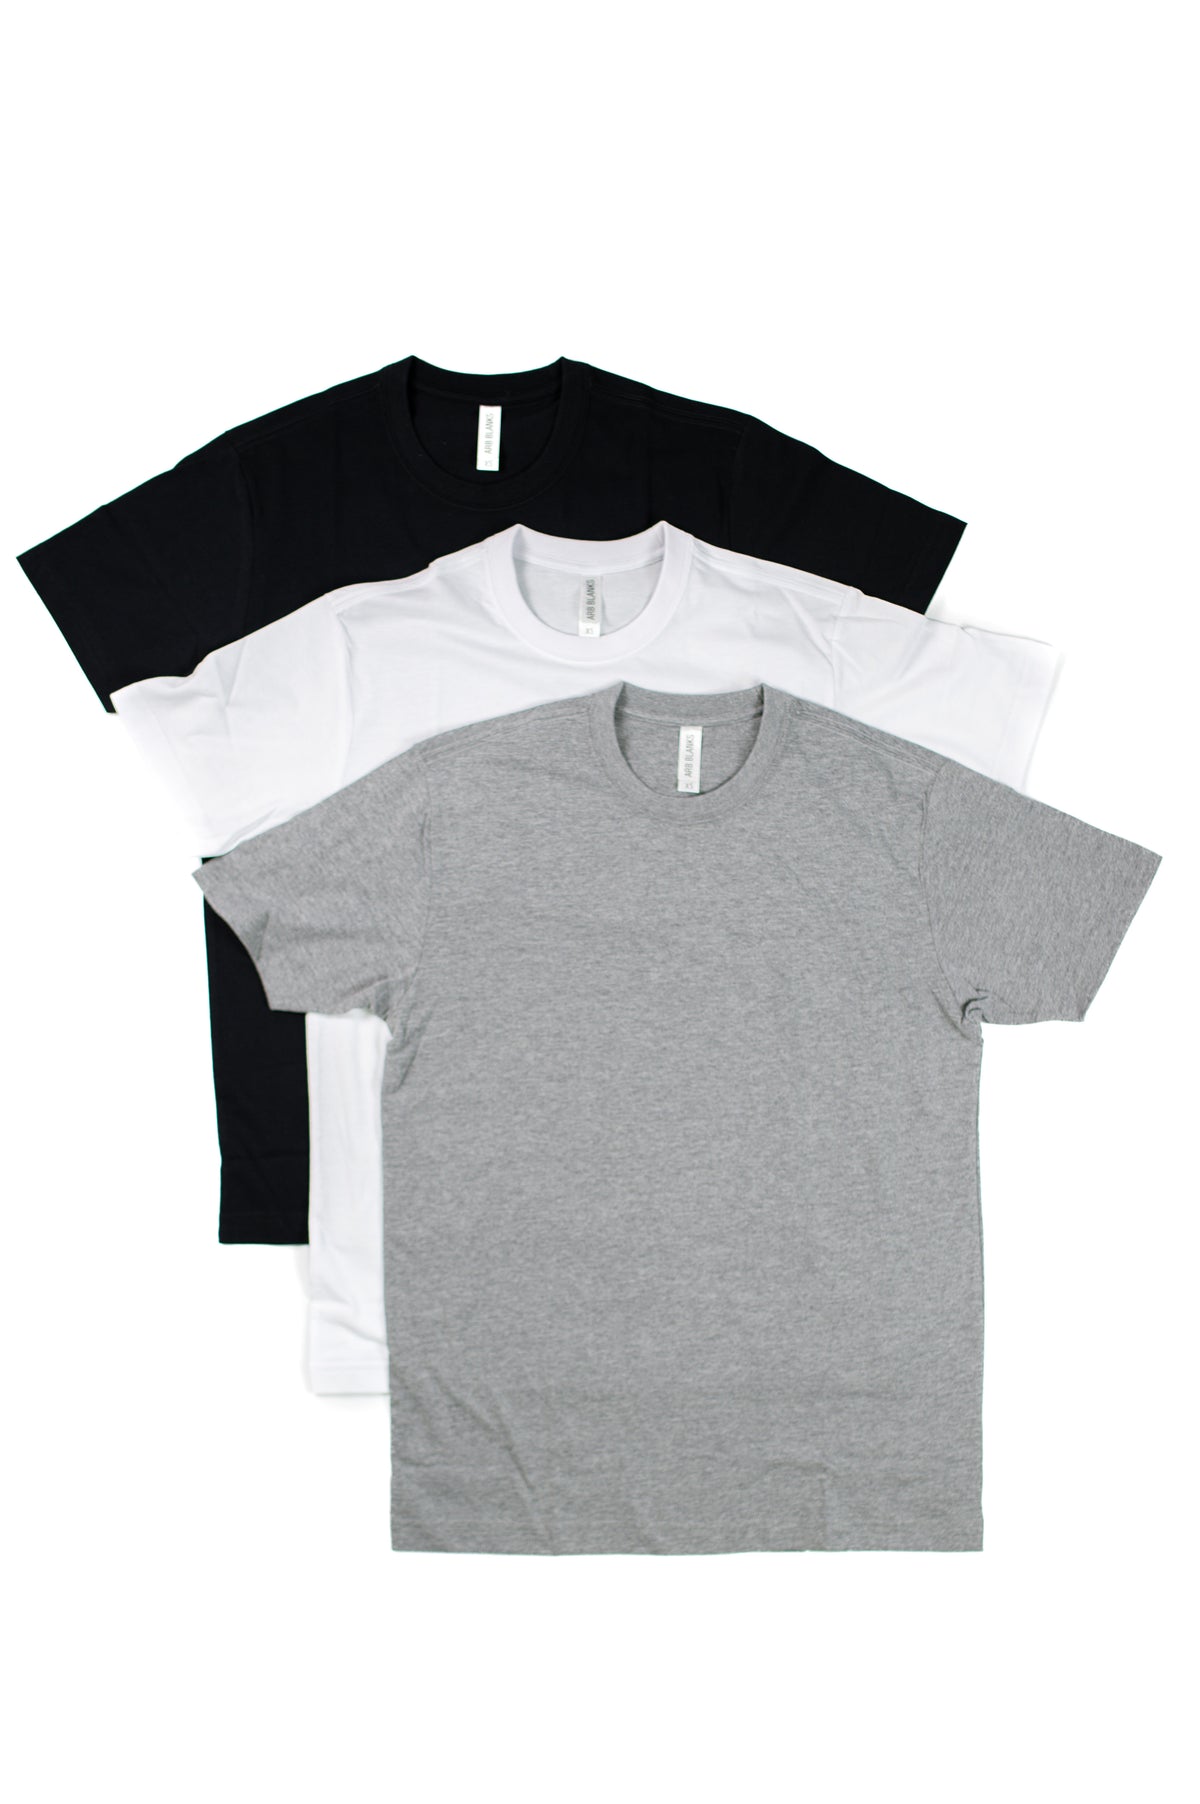 Unisex Adult Short Sleeve Shirts